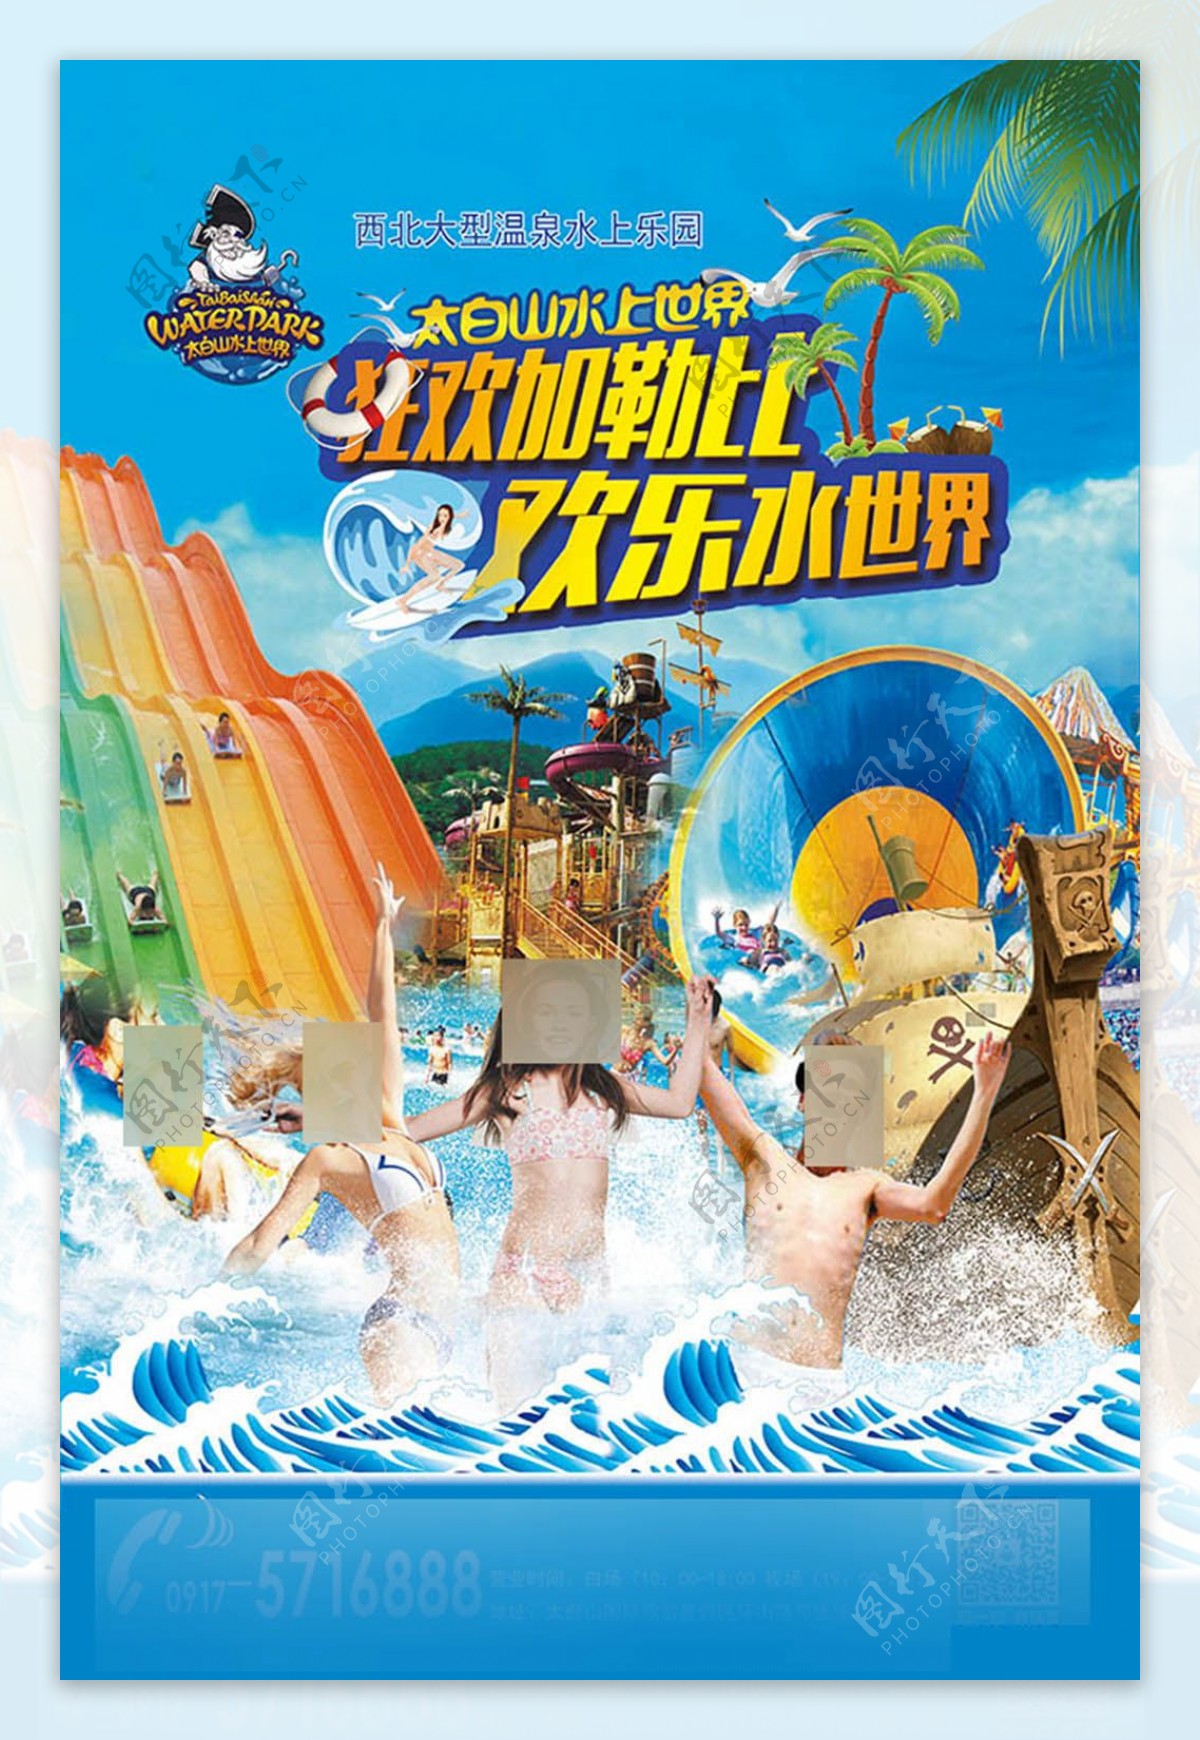 狂欢加勒比欢乐水世界水上游乐园广告设计